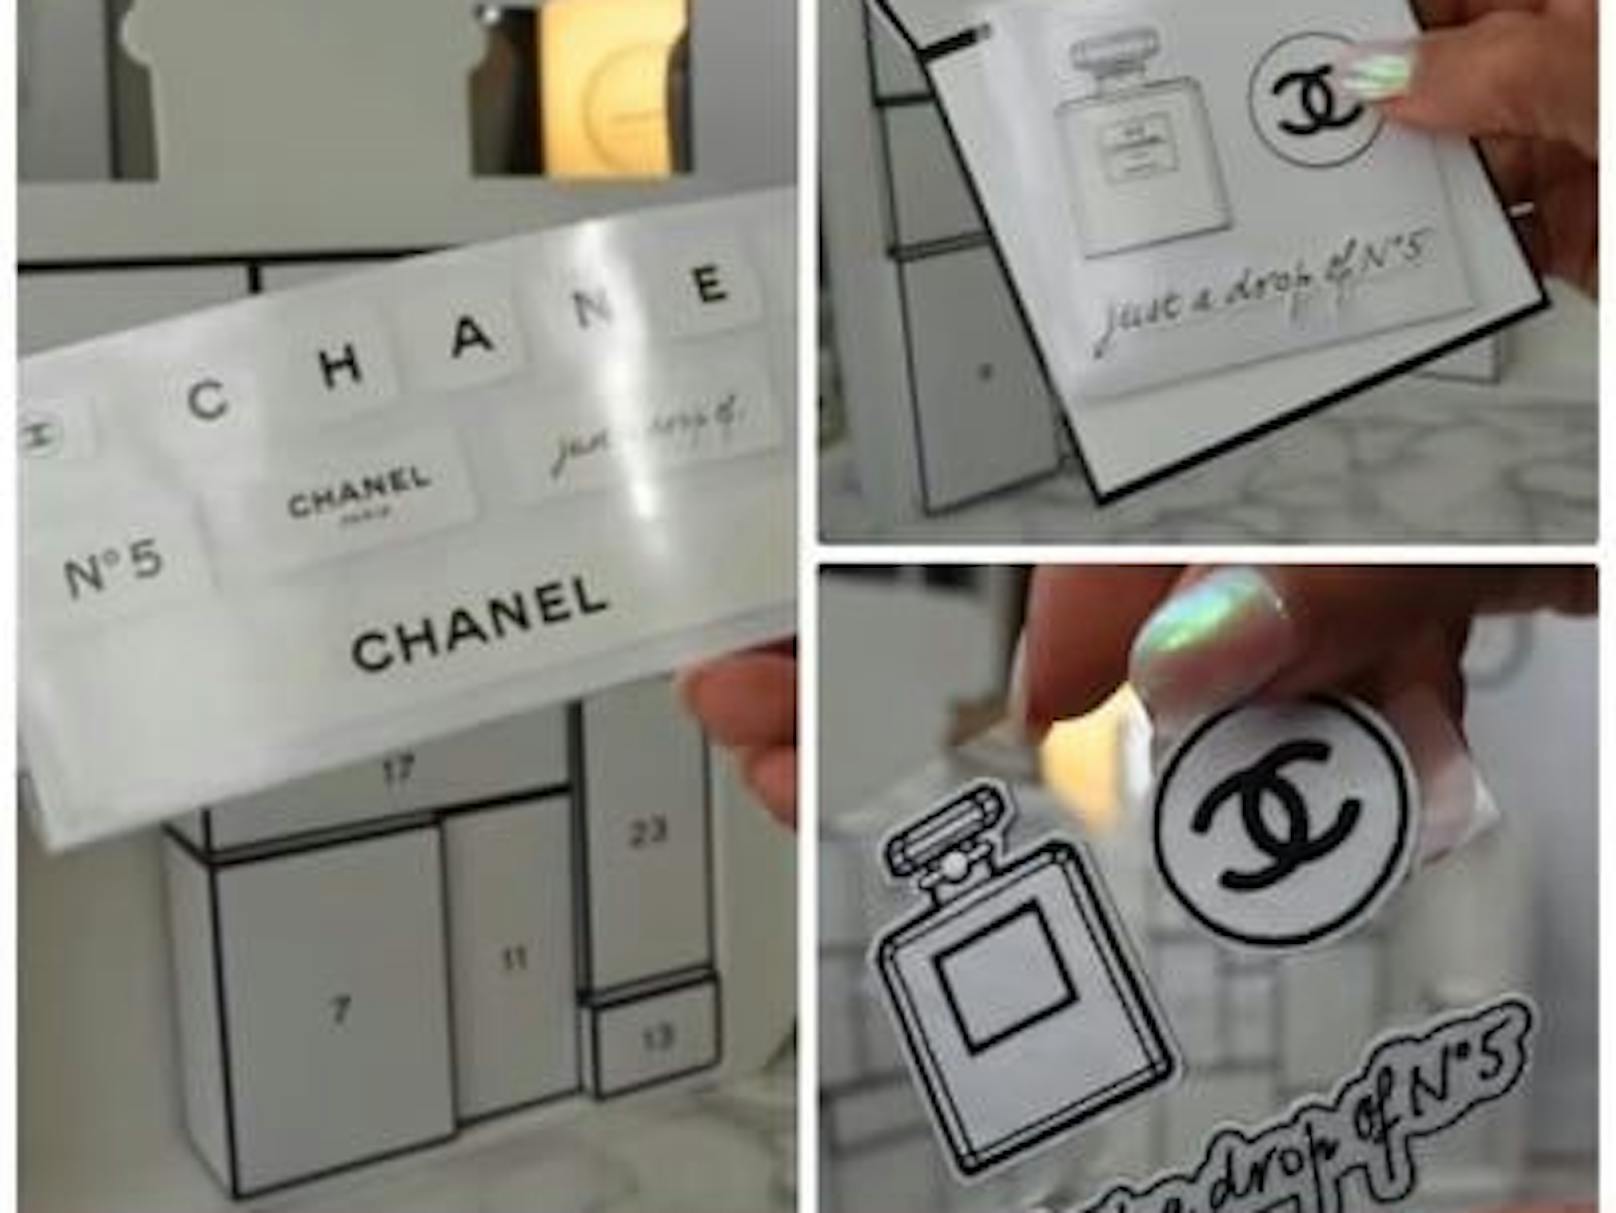 Der Adventkalender von Chanel kam unter heftige Kritik. Die Luxusmarke löschte kurzerhand sogar den Tik Tok Account